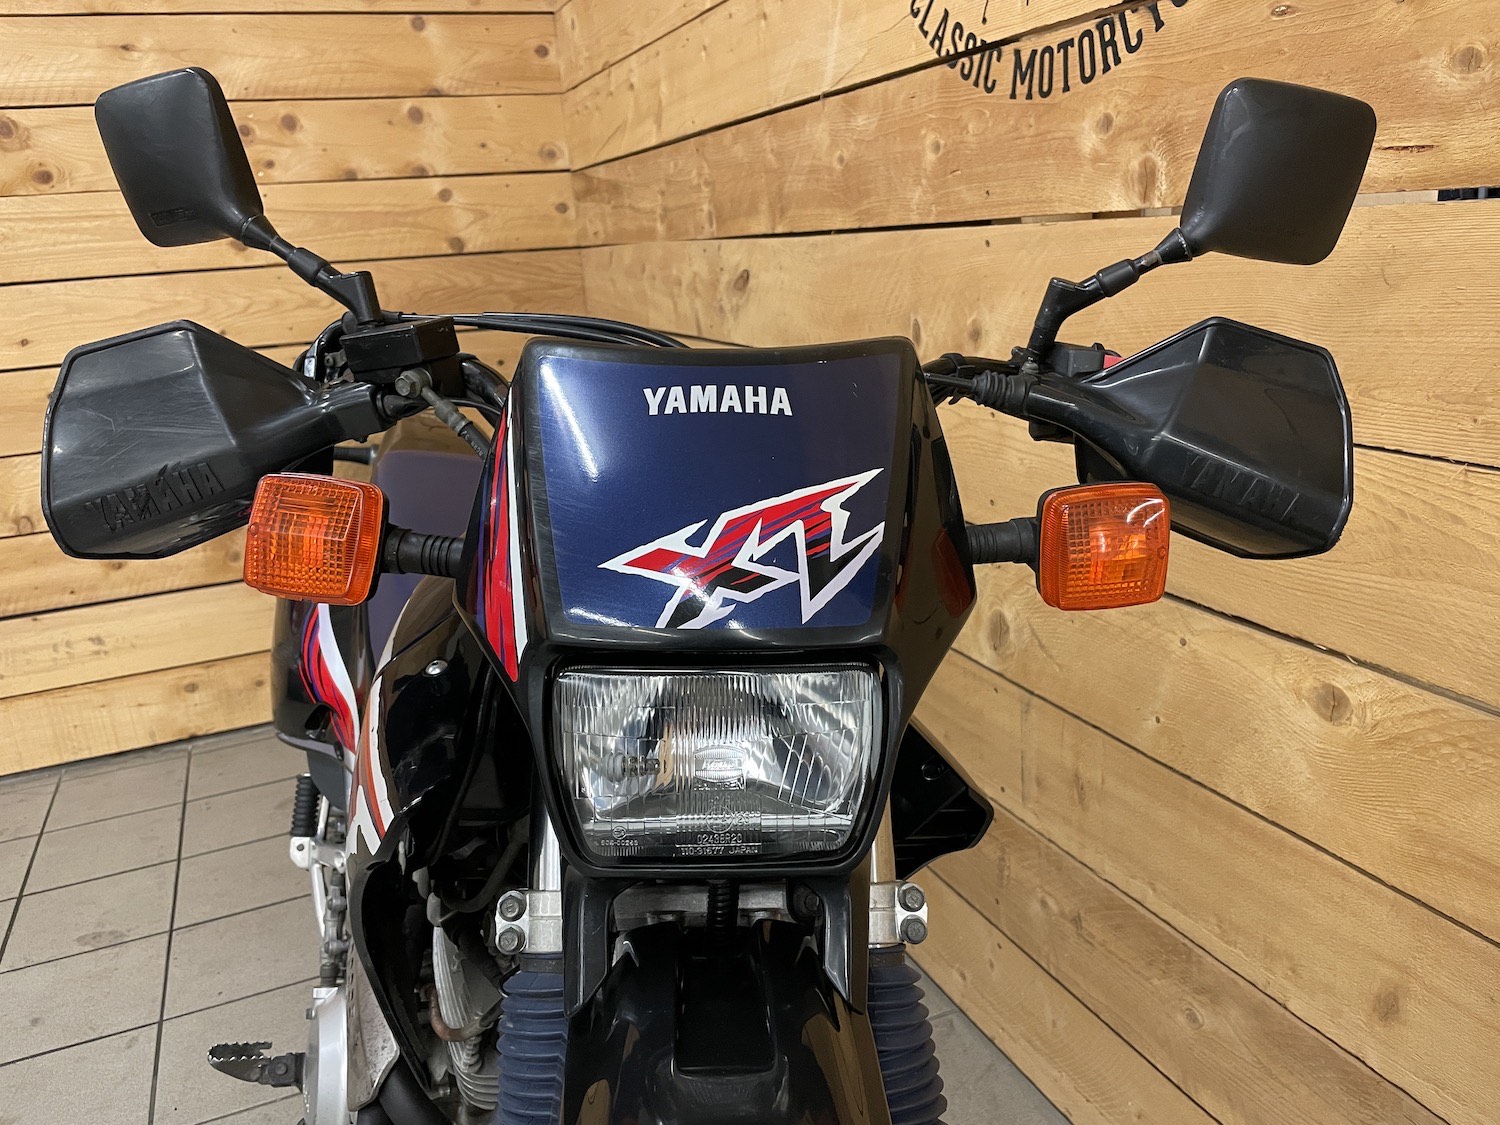 Yamaha_XT600_E_cezanne_classic_motorcycle_4-95.jpg